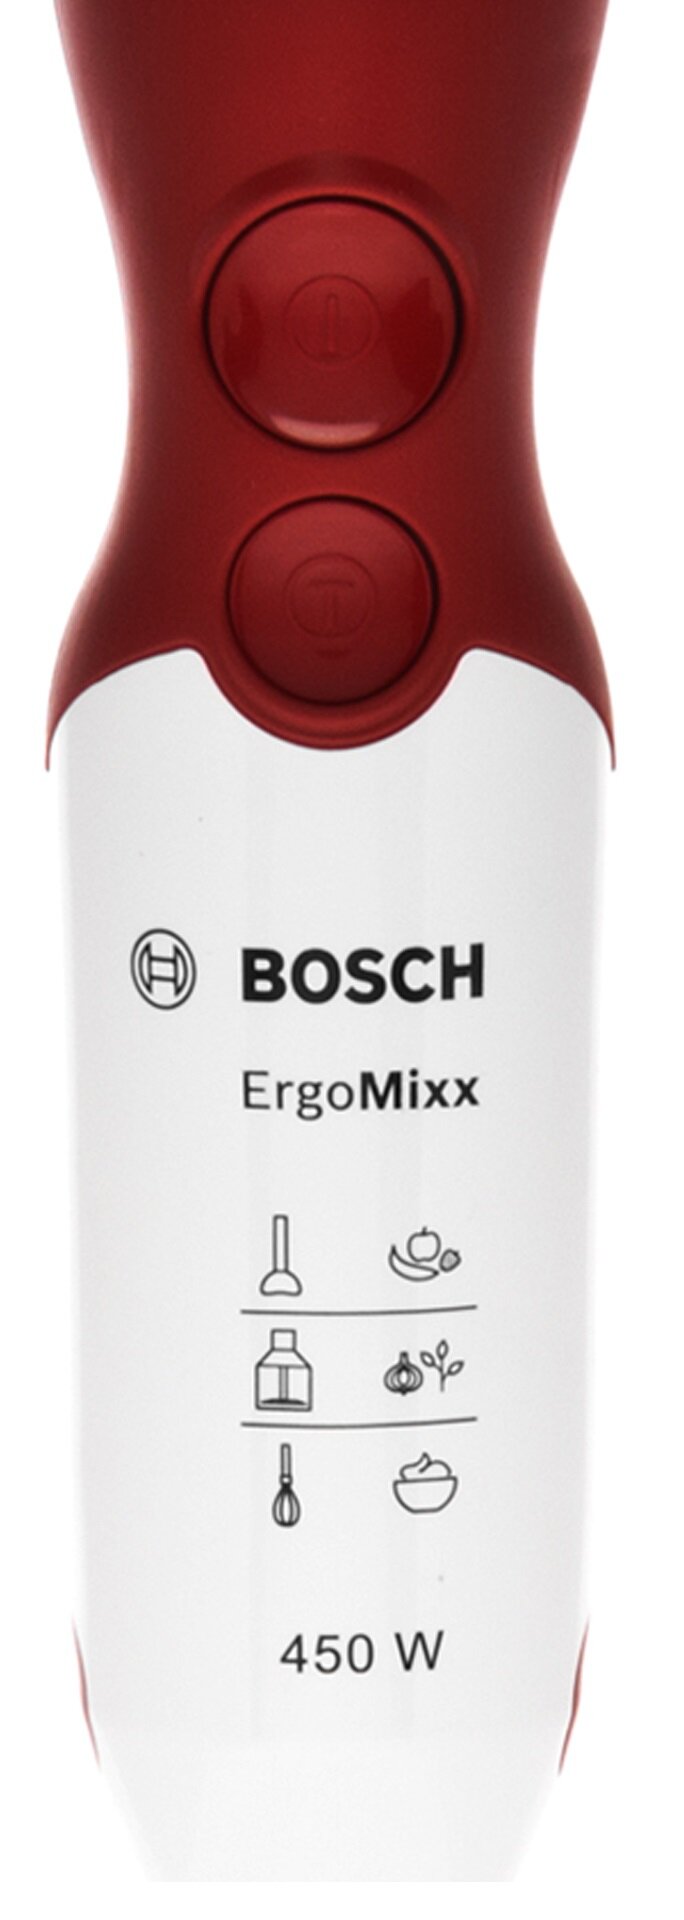 BOSCH ErgoMixx MSM 64010 Blender - niskie ceny i opinie w Media Expert